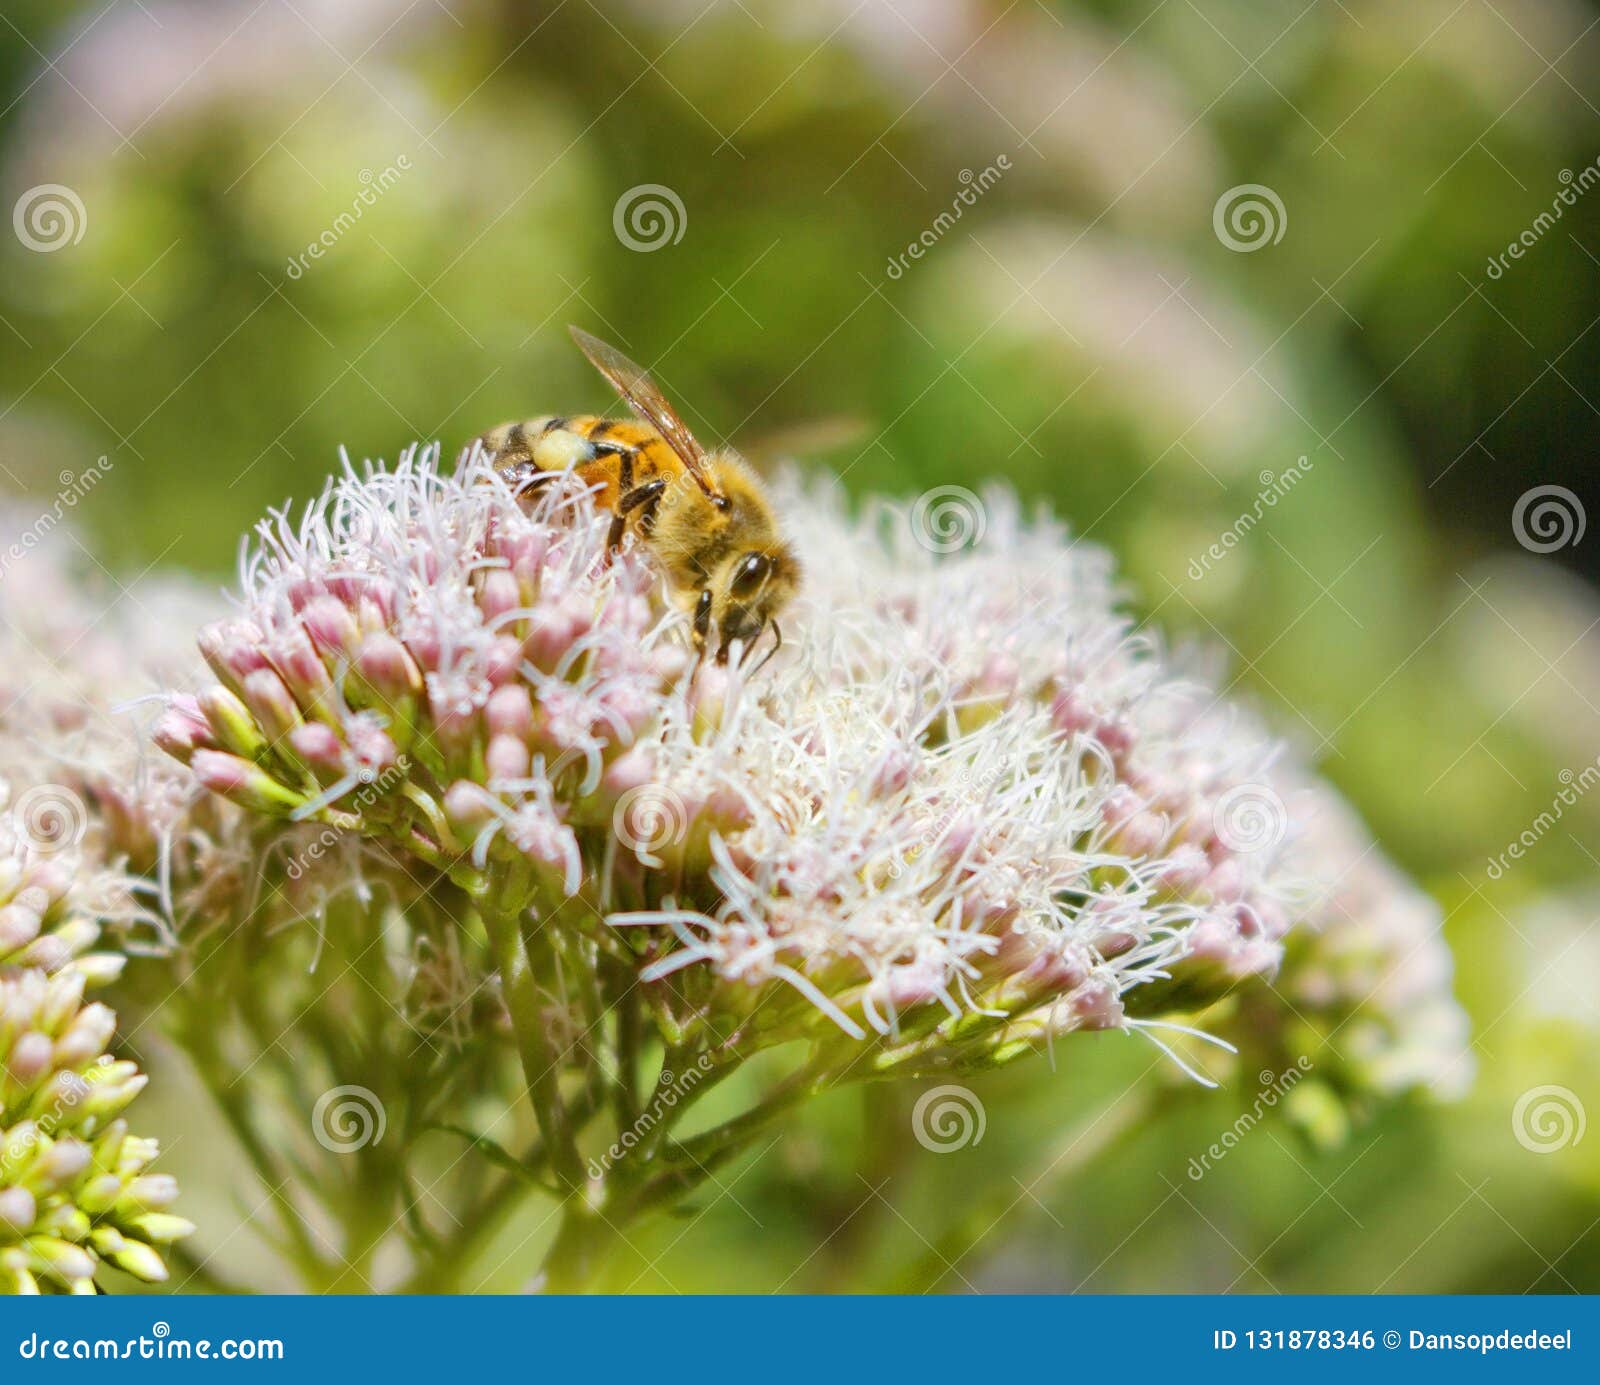 Bijen Op Bloemen in Een Tuin Stock Foto Image of seizoengebonden groen 131878346